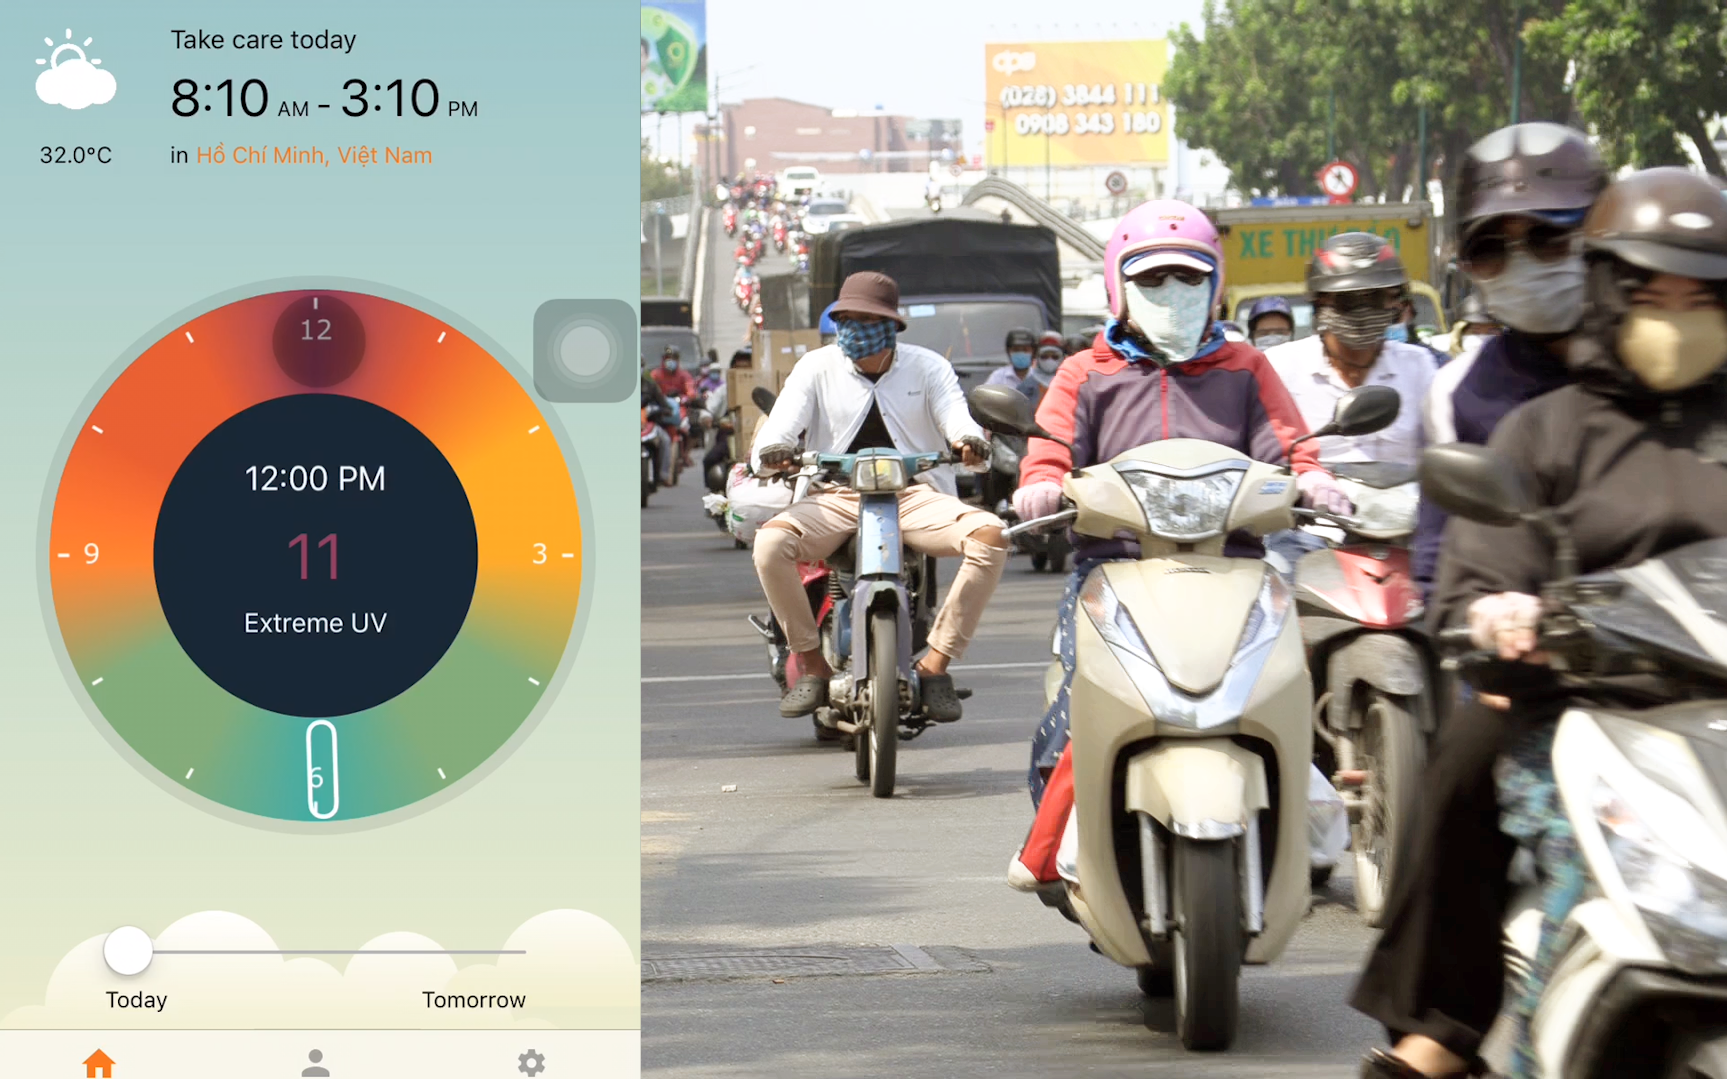 Clip: Chỉ số tia UV đạt ngưỡng rất cao vào buổi trưa ở Sài Gòn, người dân mệt mỏi khi phải di chuyển ngoài đường